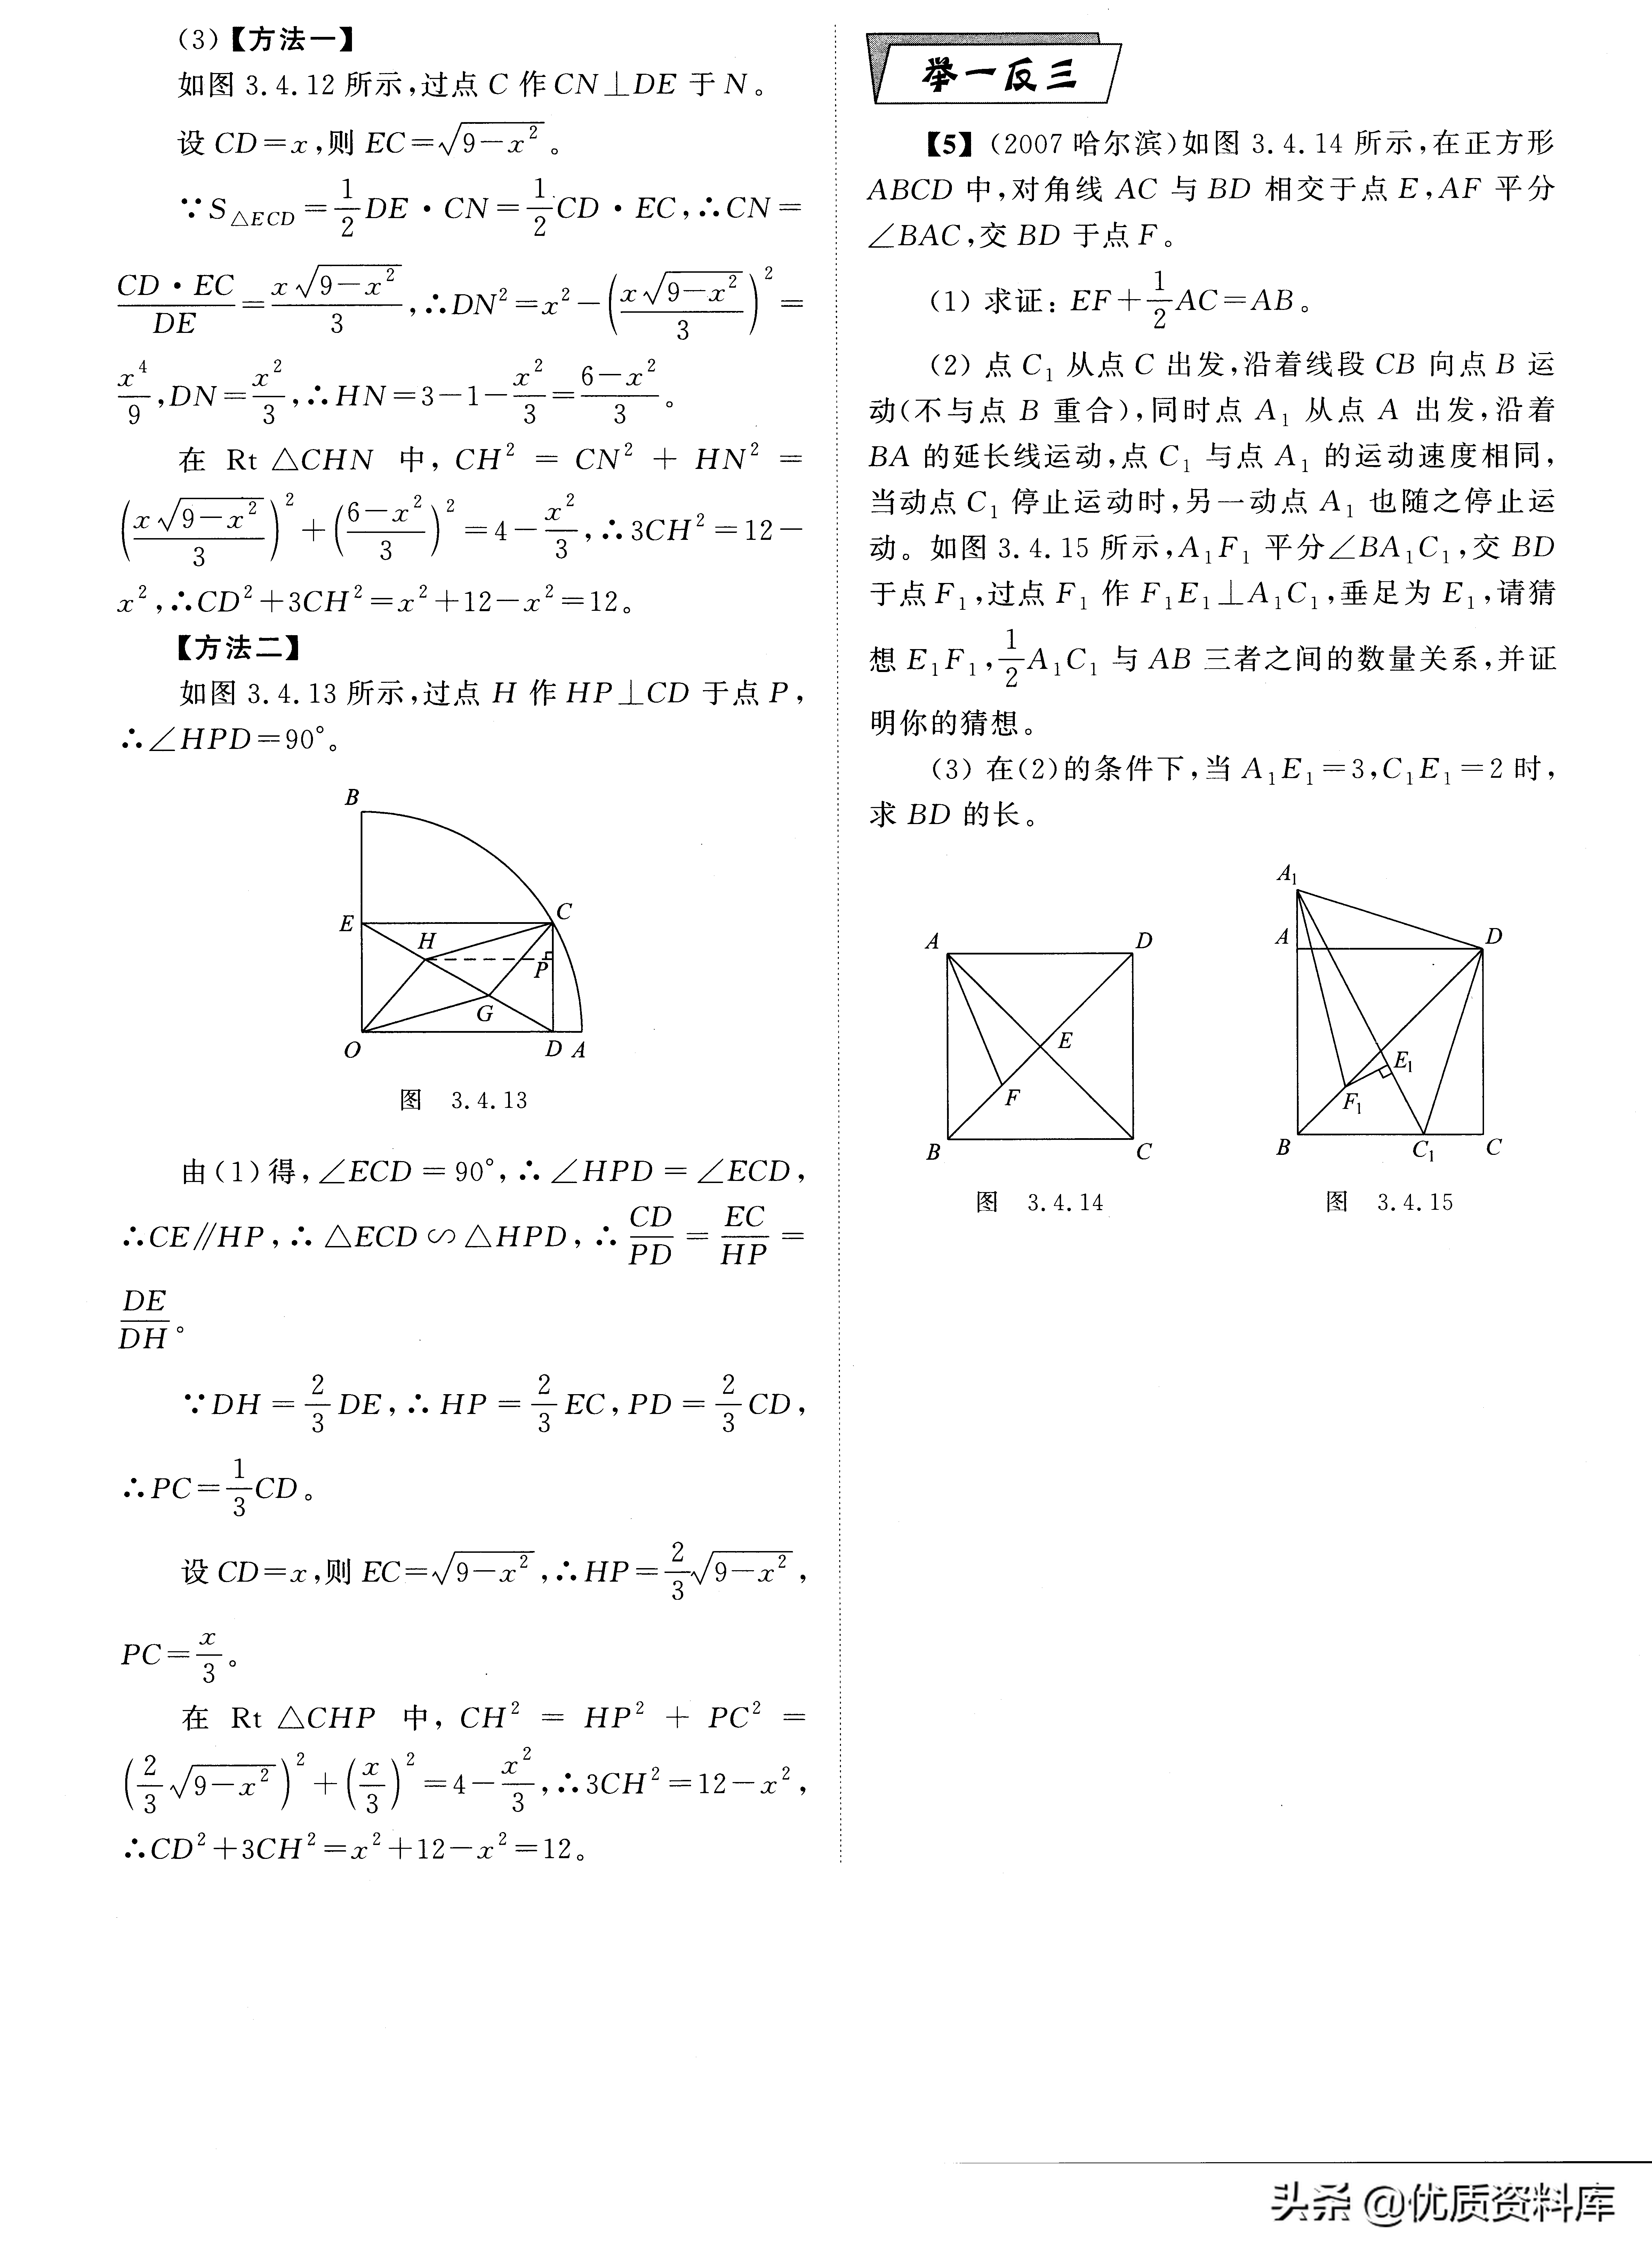 中考数学常用的几何辅助线方法和技巧